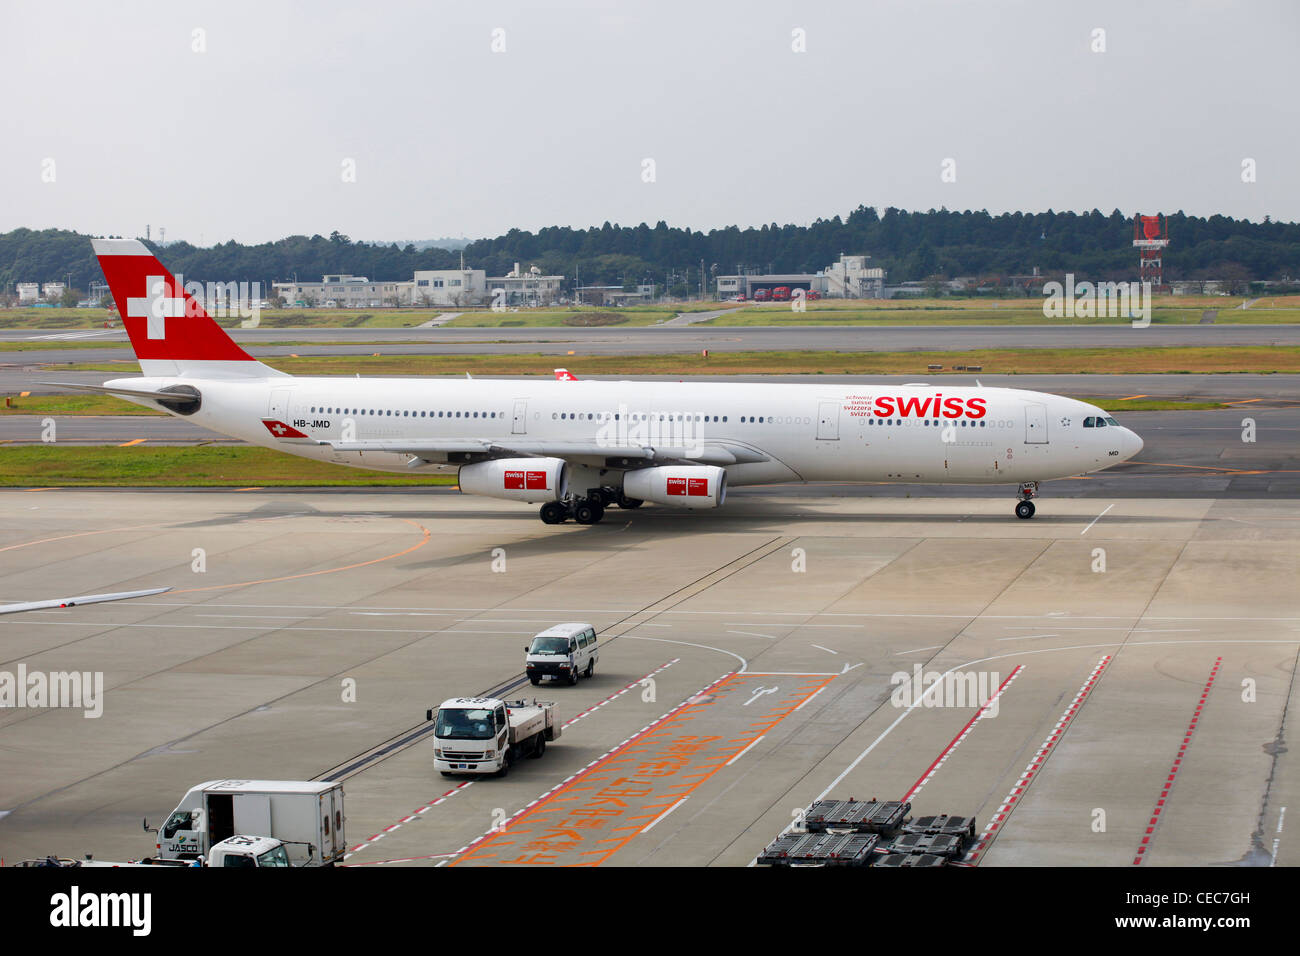 Swiss International Airline Airbus 340, New Tokyo International Airport,  Narita, Tokyo, Japan Stock Photo - Alamy